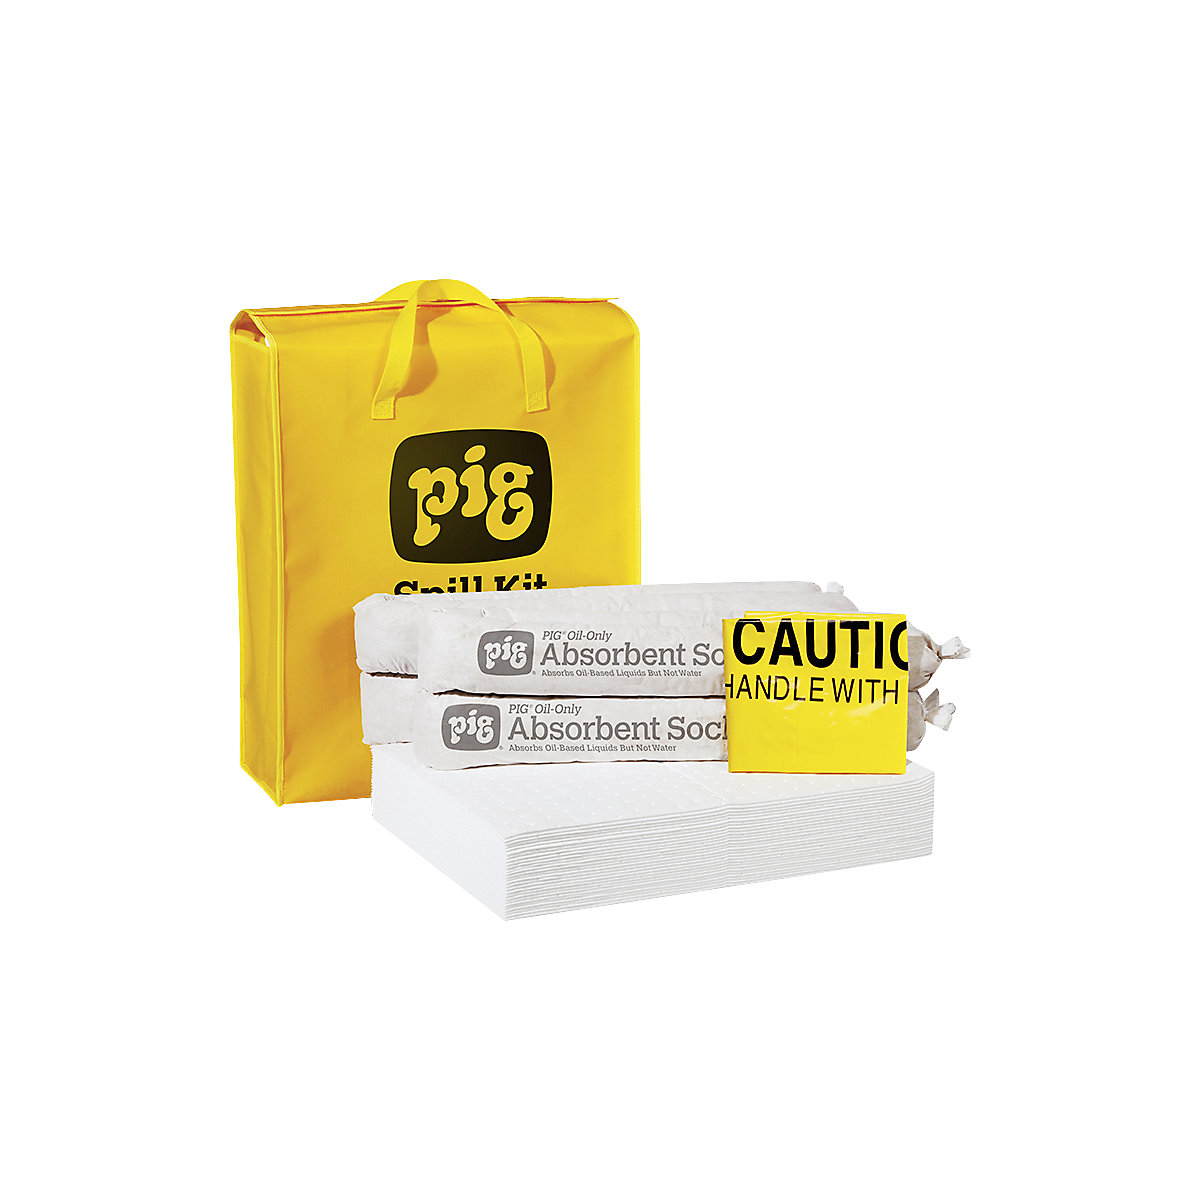 Kit de urgenţă, în geantă portabilă - PIG